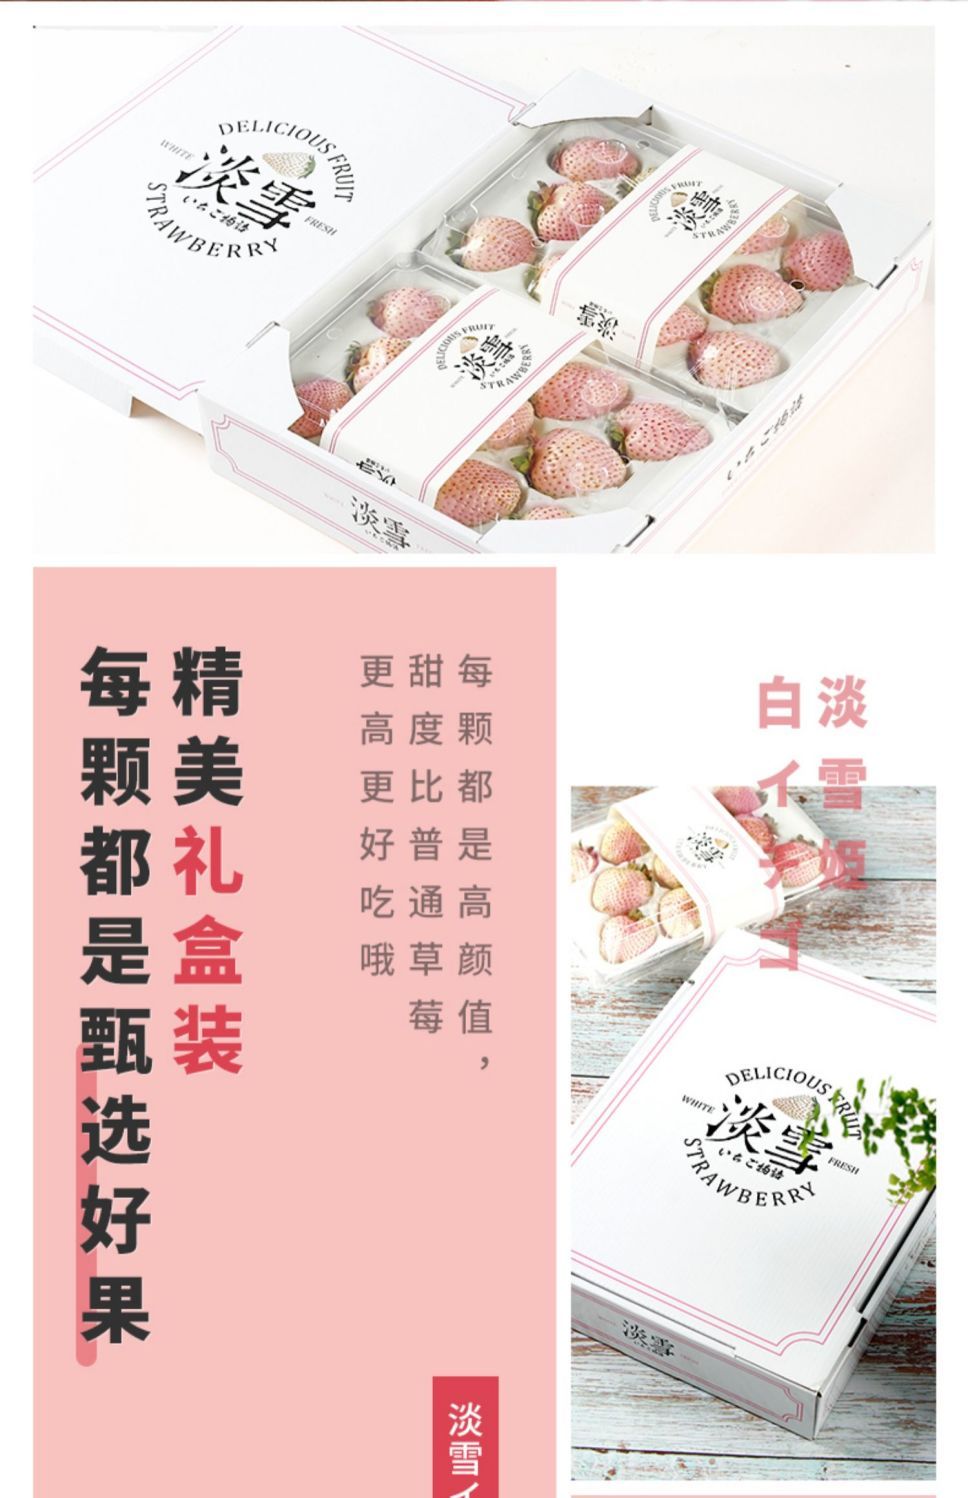 【顺丰次日达】淡雪白草莓新鲜水果现摘现发白草莓礼盒淡雪草莓奶